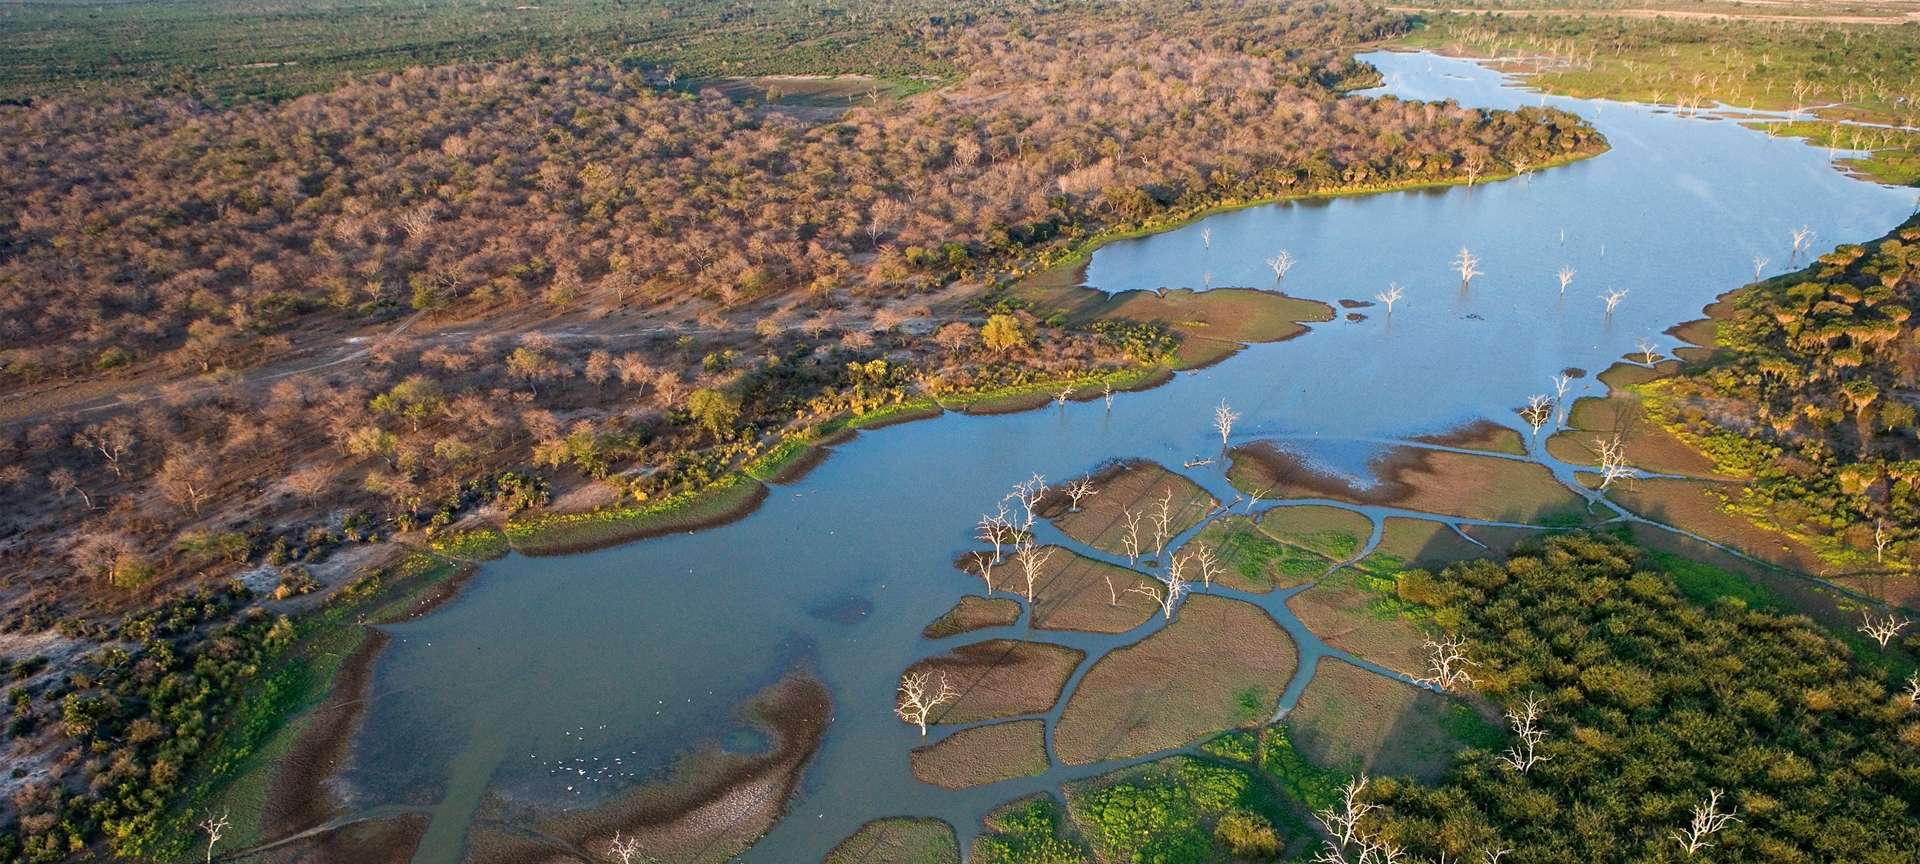 The Okavango Delta is one of Africa's marvels